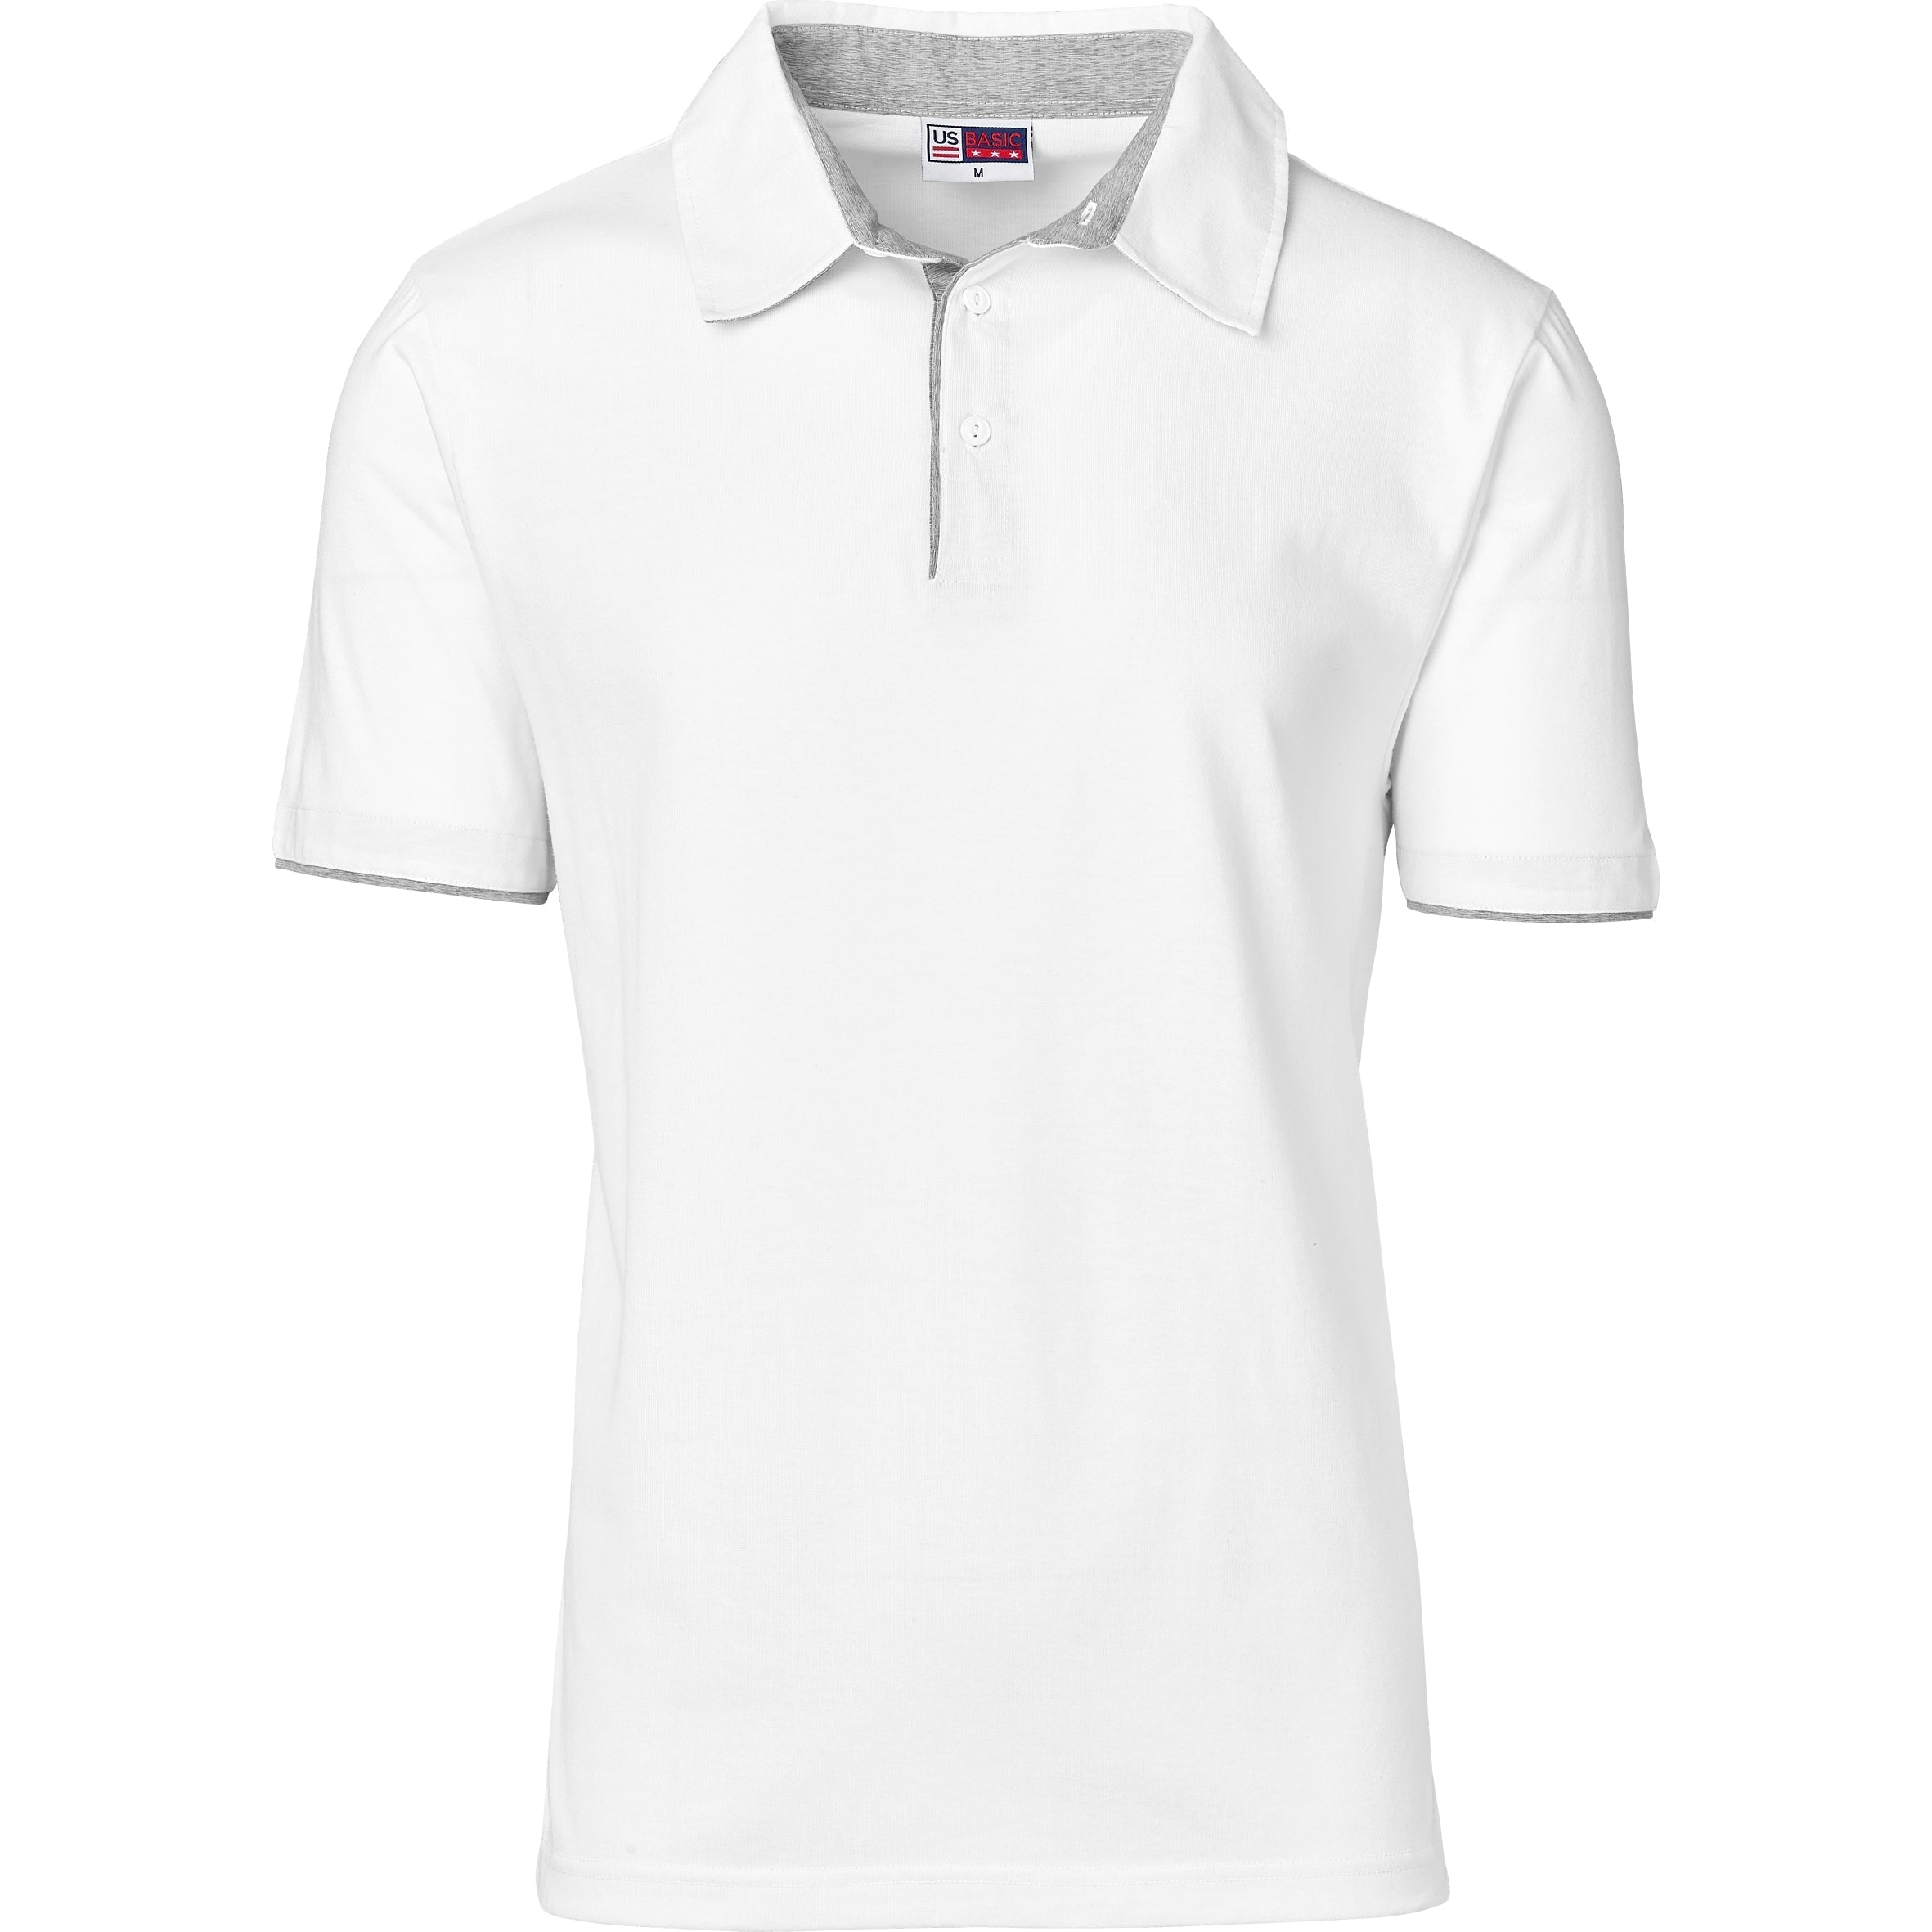 Mens Delta Golf Shirt-2XL-White-W